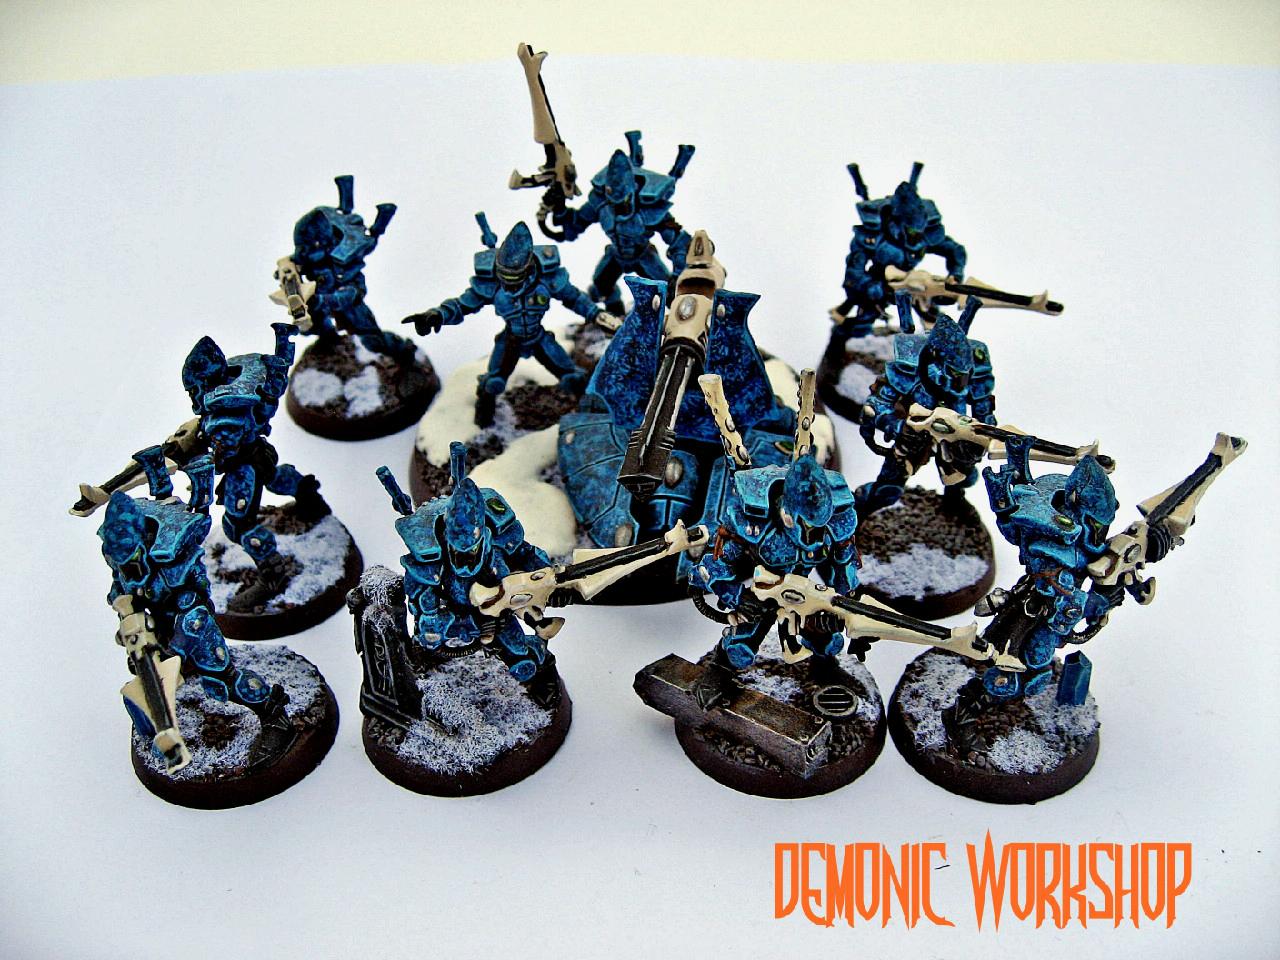 Demonic Workshop, Eldar, Warhammer Fantasy